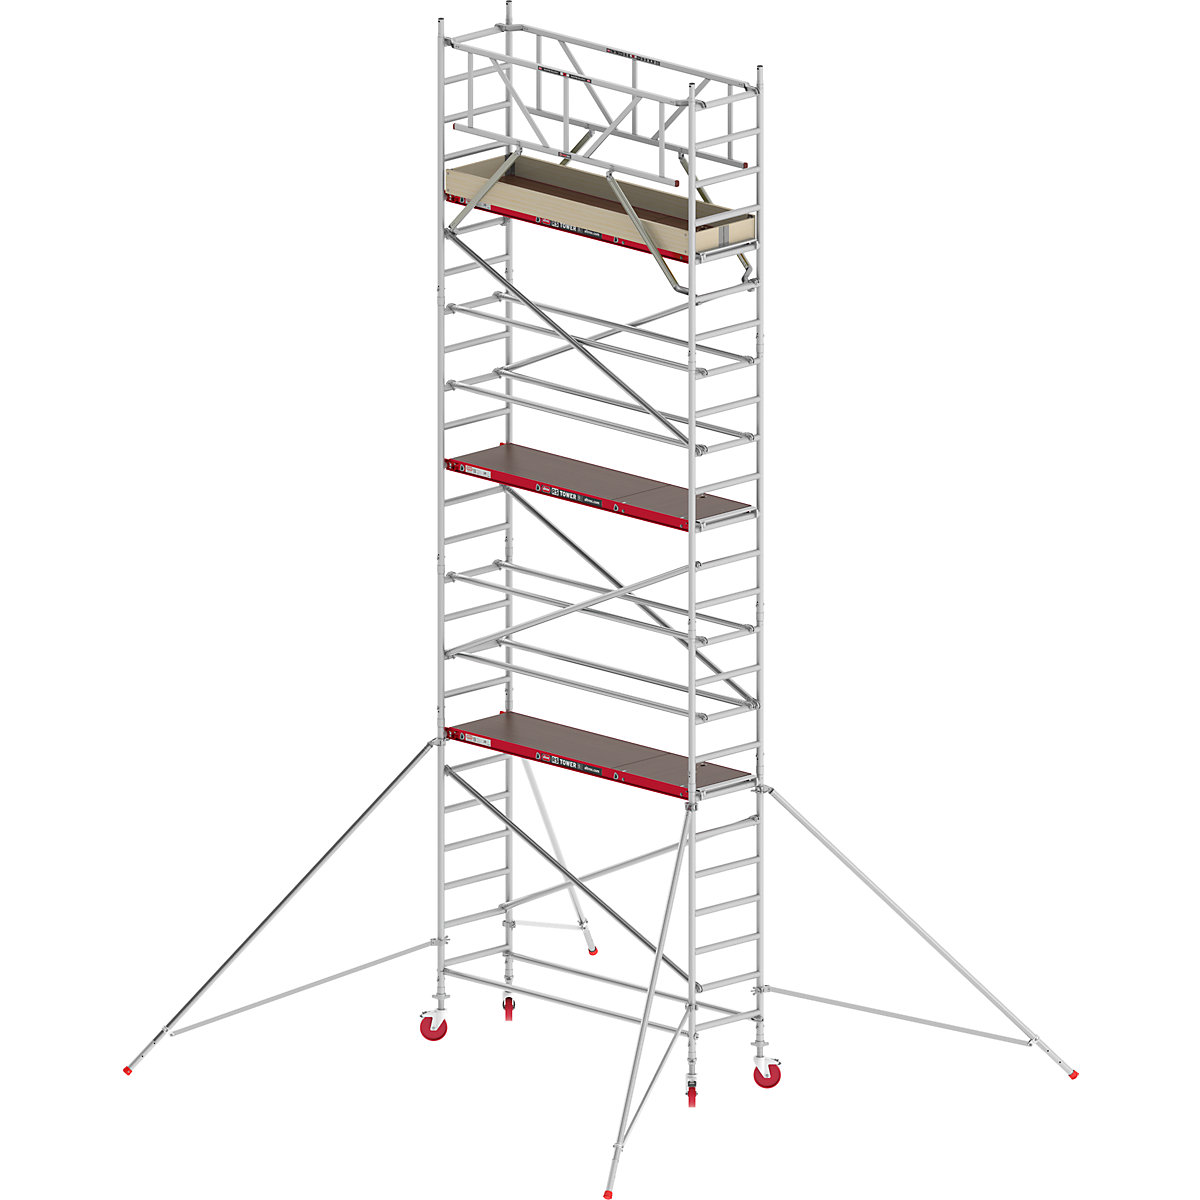 Fahrgerüst RS TOWER 41 schmal Altrex, Holzplattform, Länge 1,85 m, Arbeitshöhe 8,20 m